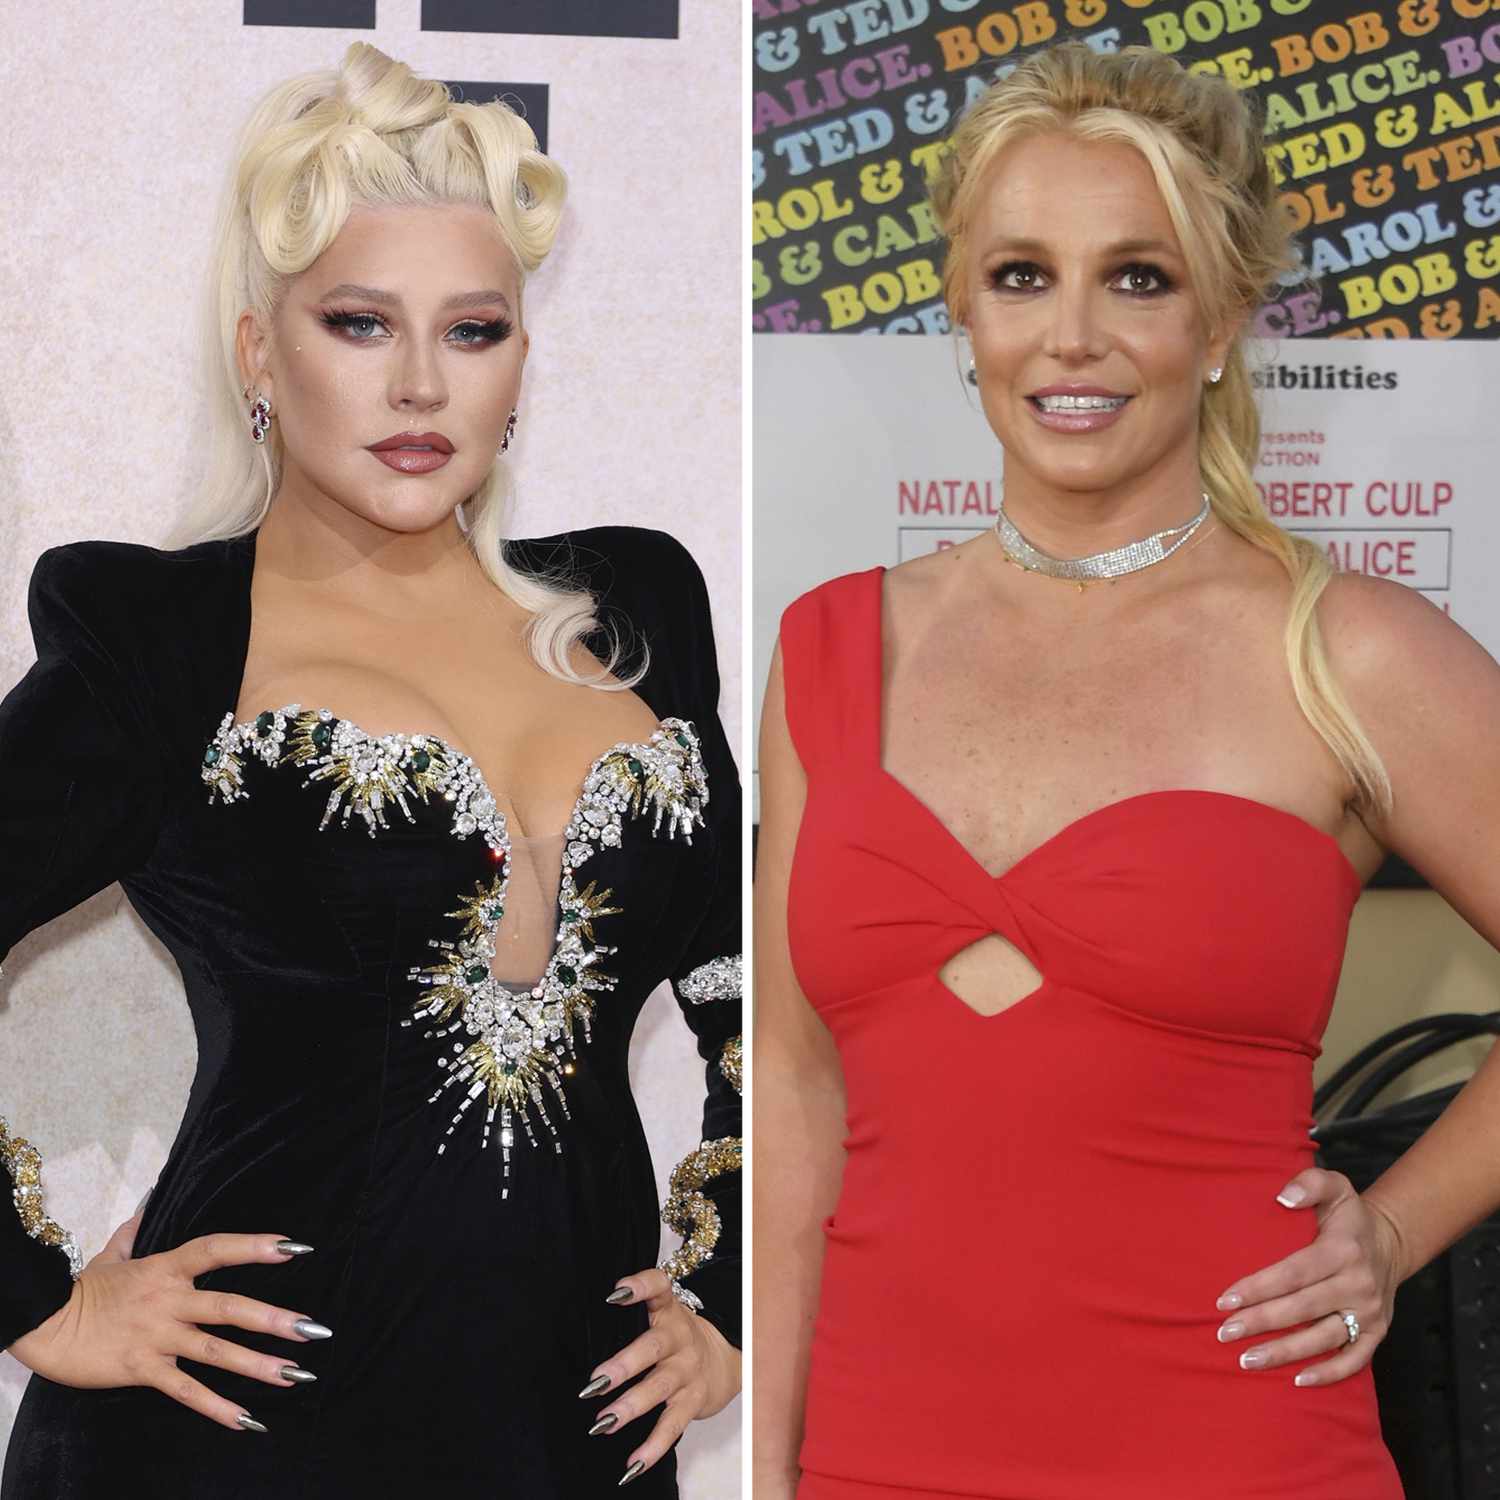 Le llueven las críticas a Britney Spears tras hablar sobre la figura de los bailarines de Christina Aguilera